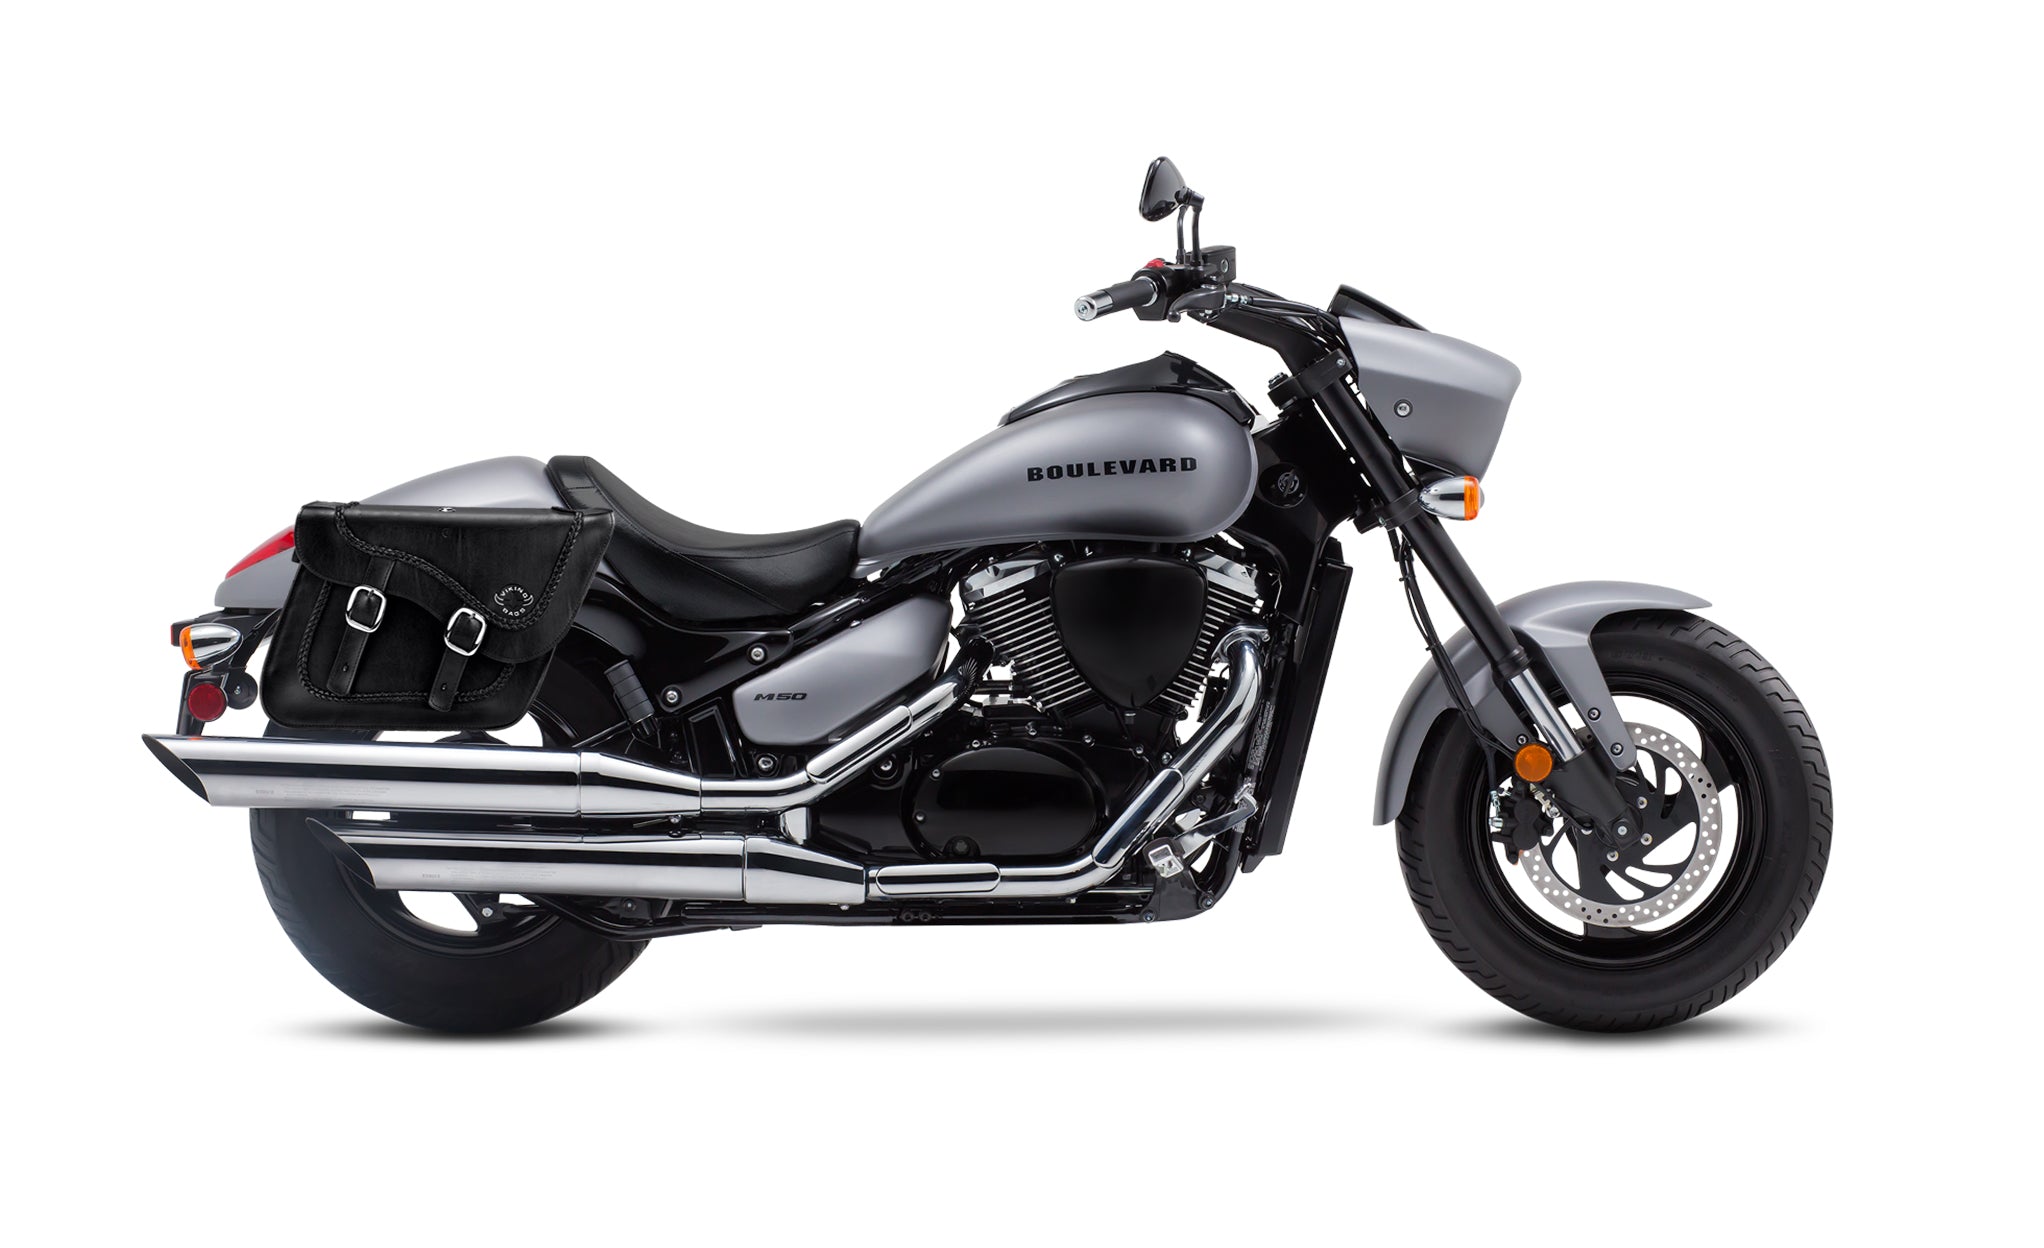 Viking Americano Suzuki Boulevard M50 Vz800 Braided Large Leather Motorcycle Saddlebags on Bike Photo @expand